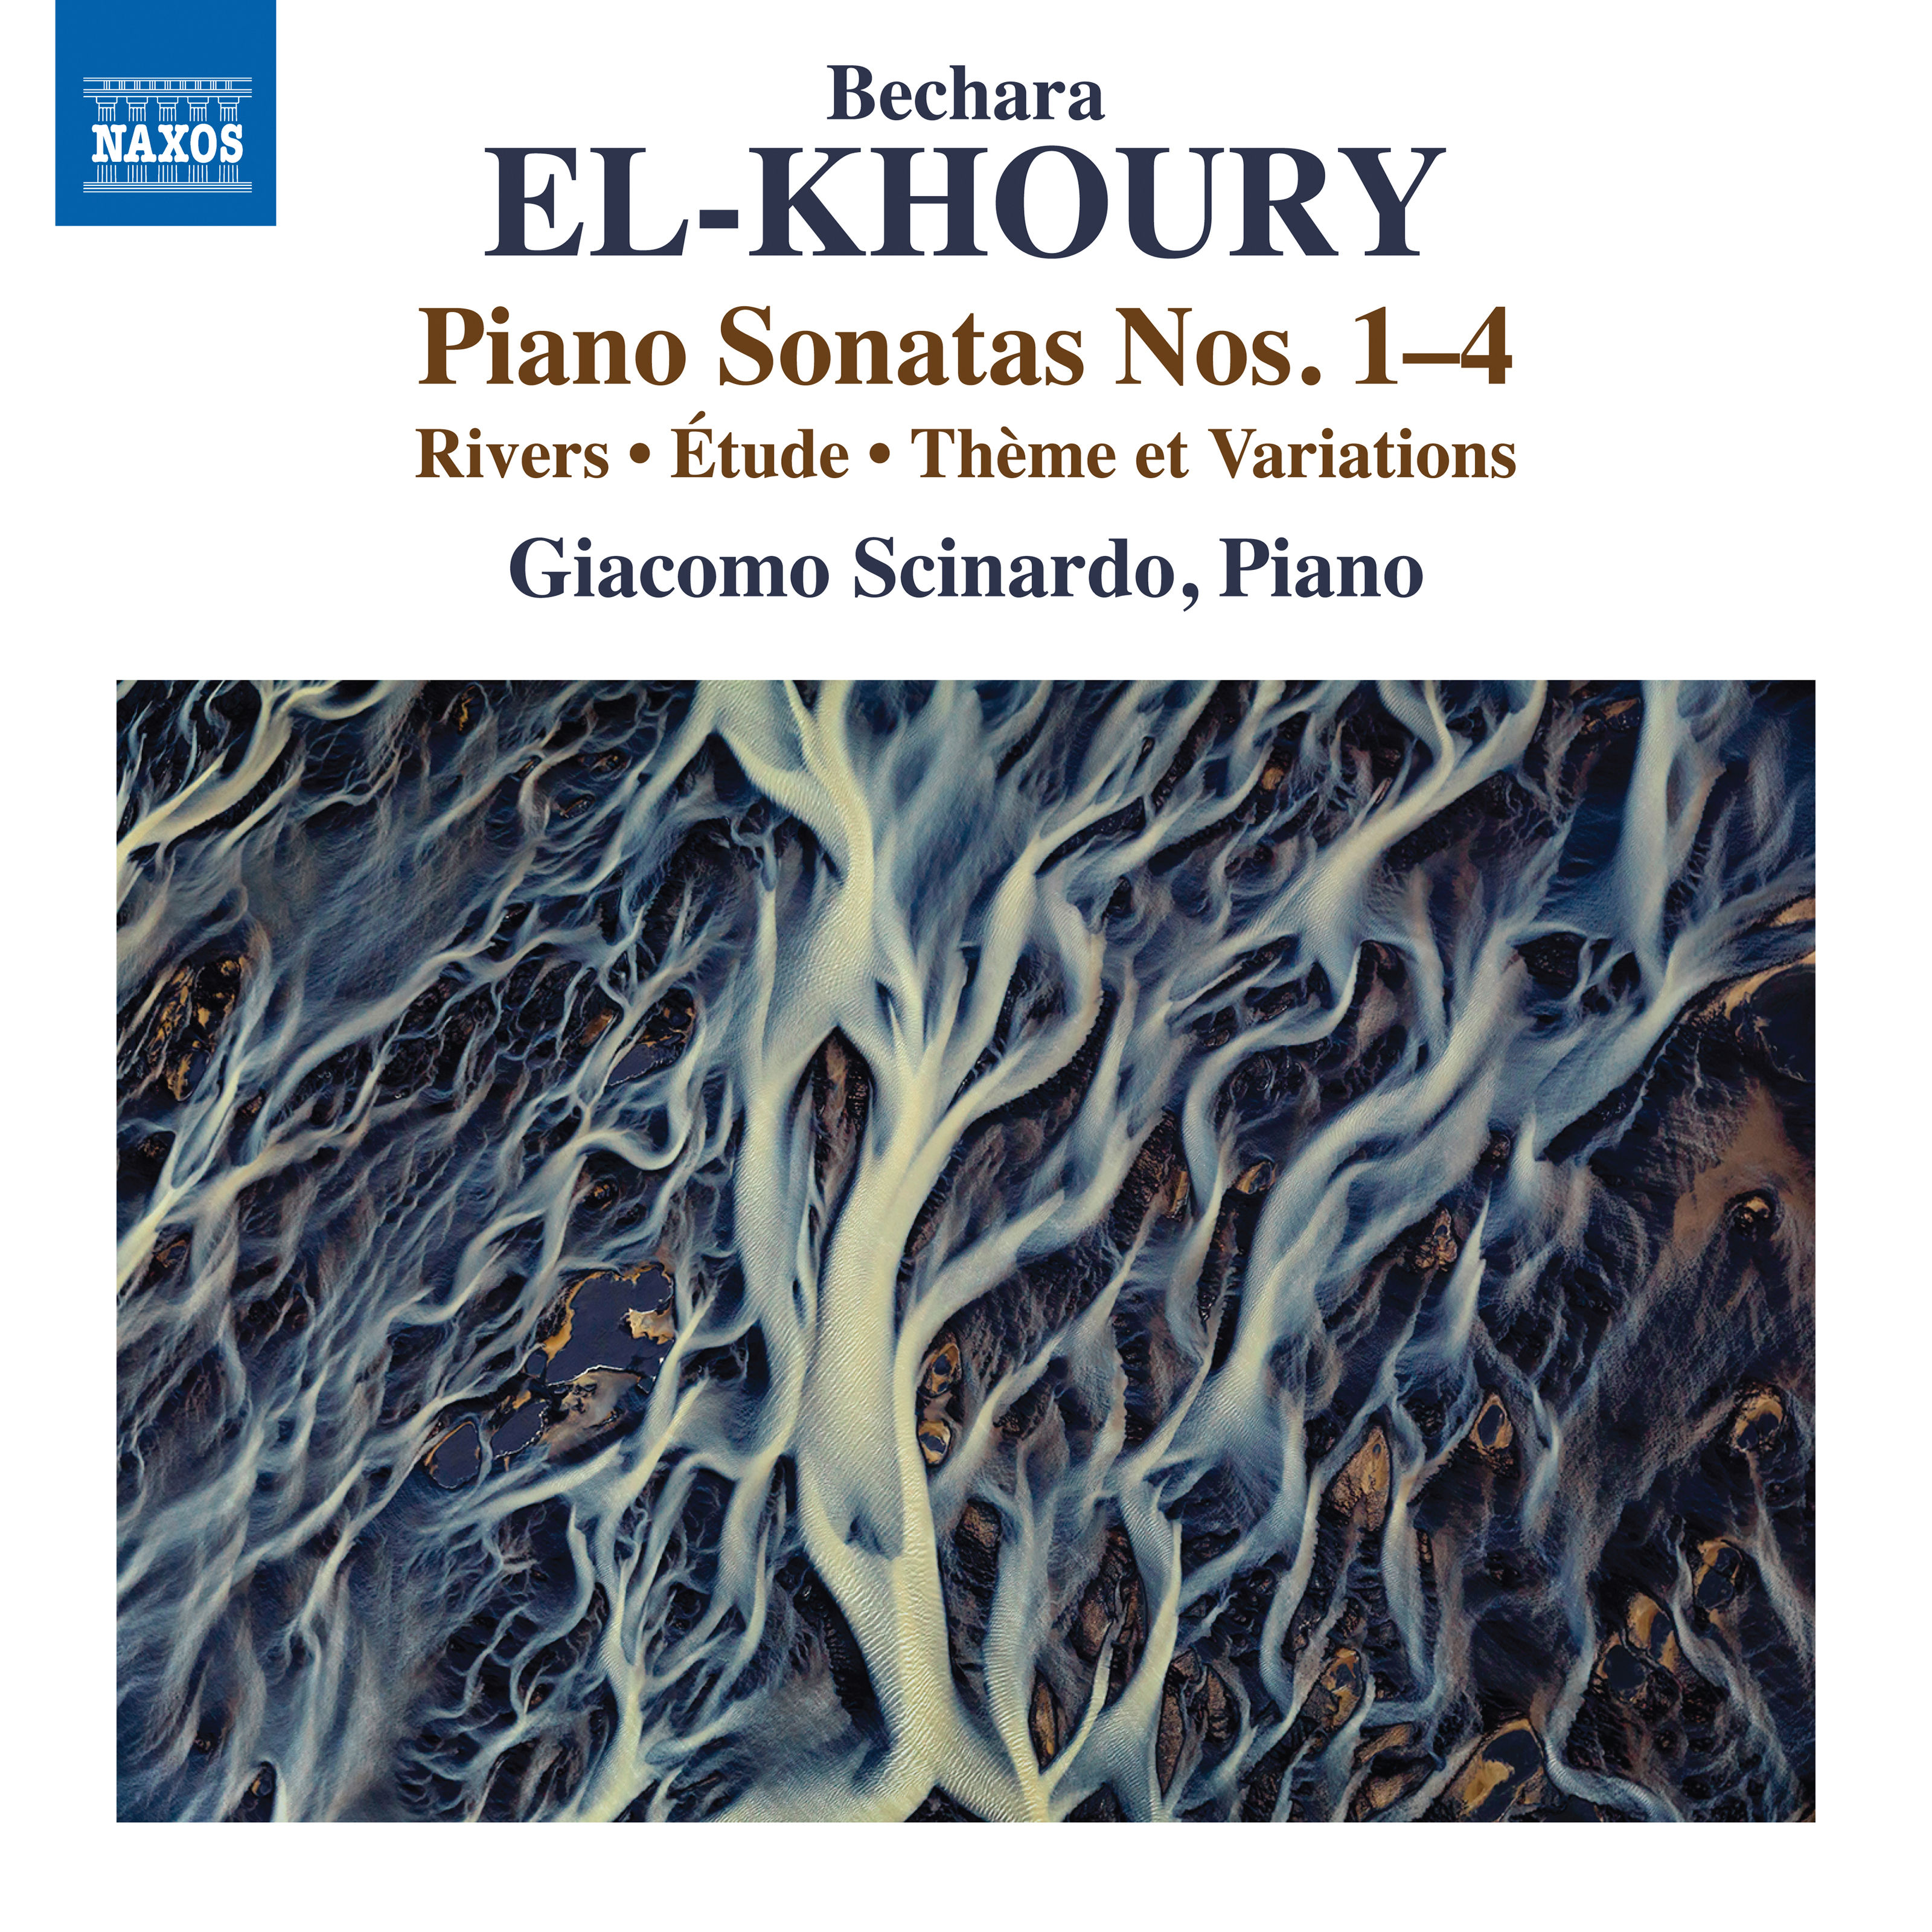 Giacomo Scinardo – Bechara El-Khoury: Works for Piano (2019) [FLAC 24bit/96kHz]